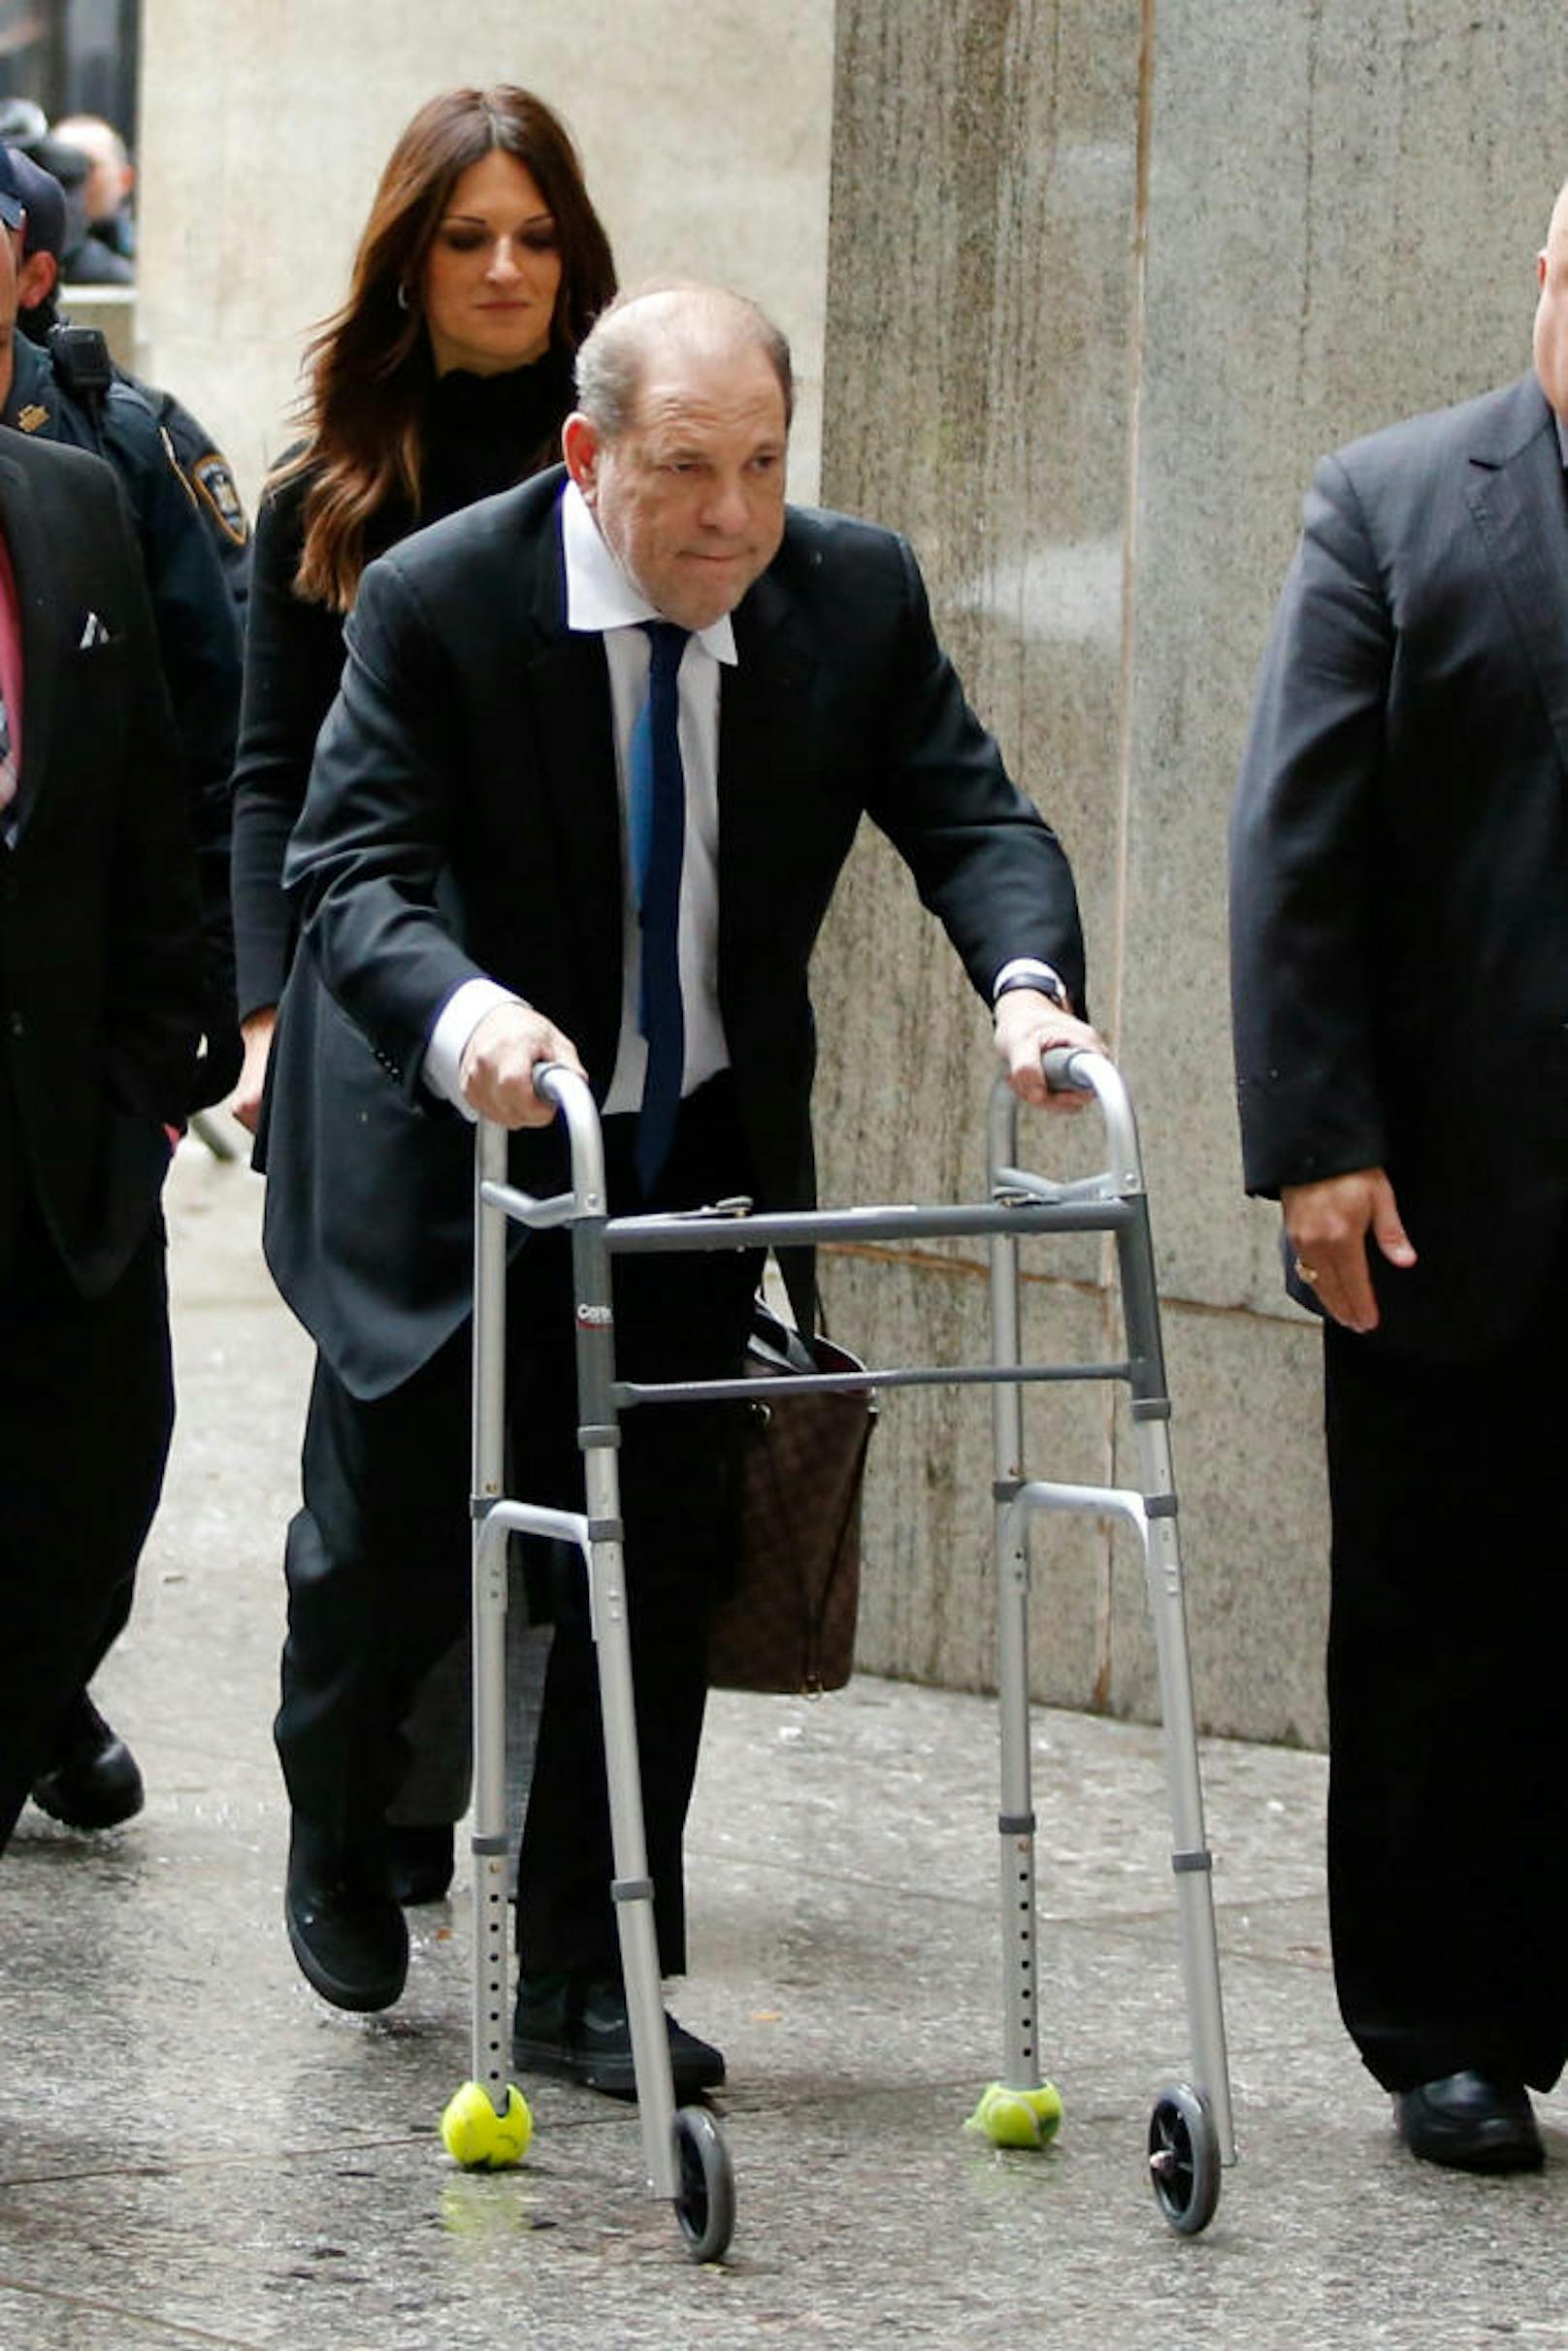 Harvey Weinstein muss sich angeblich einer Rückenoperation unterziehen, kam daher mit Gehilfe ins Gericht.